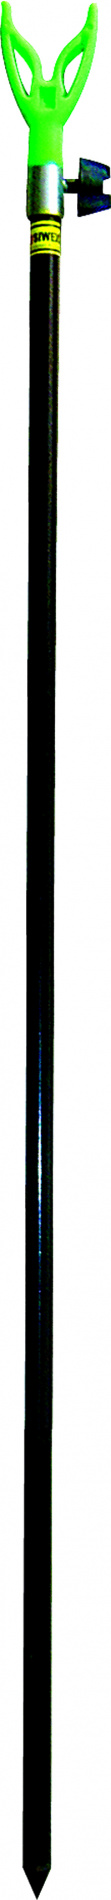 Подставка д/удочки SWD тел. V тип 2 1,8м (7410012)